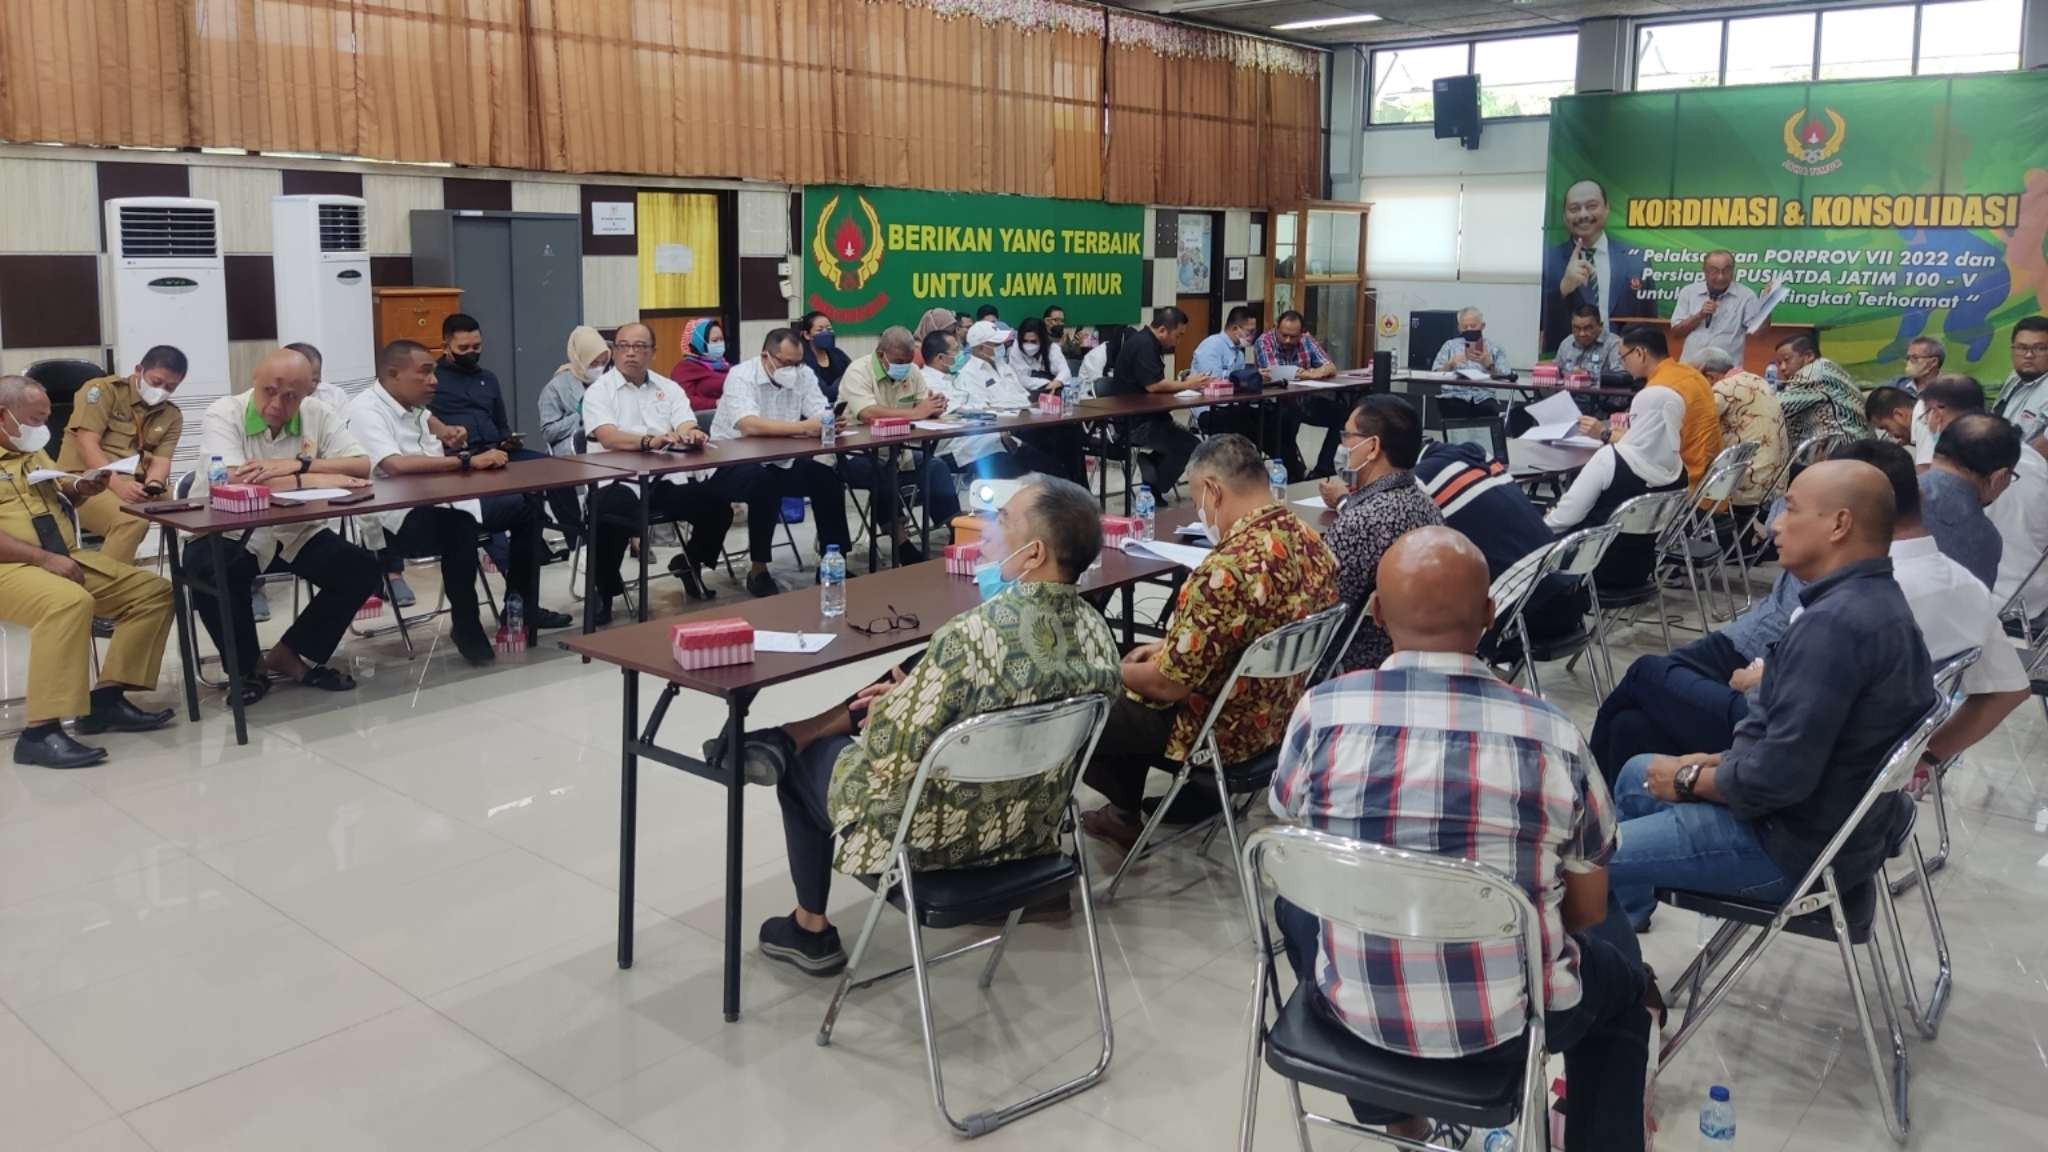 Pengurus KONI Jatim saat melakukan rapat koordinasi pelaksanaan Porprov VII di Gedung KONI Jatim, Surabaya, Selasa 17 Mei 2022. (Foto: Fariz Yarbo/Ngopibareng.id)